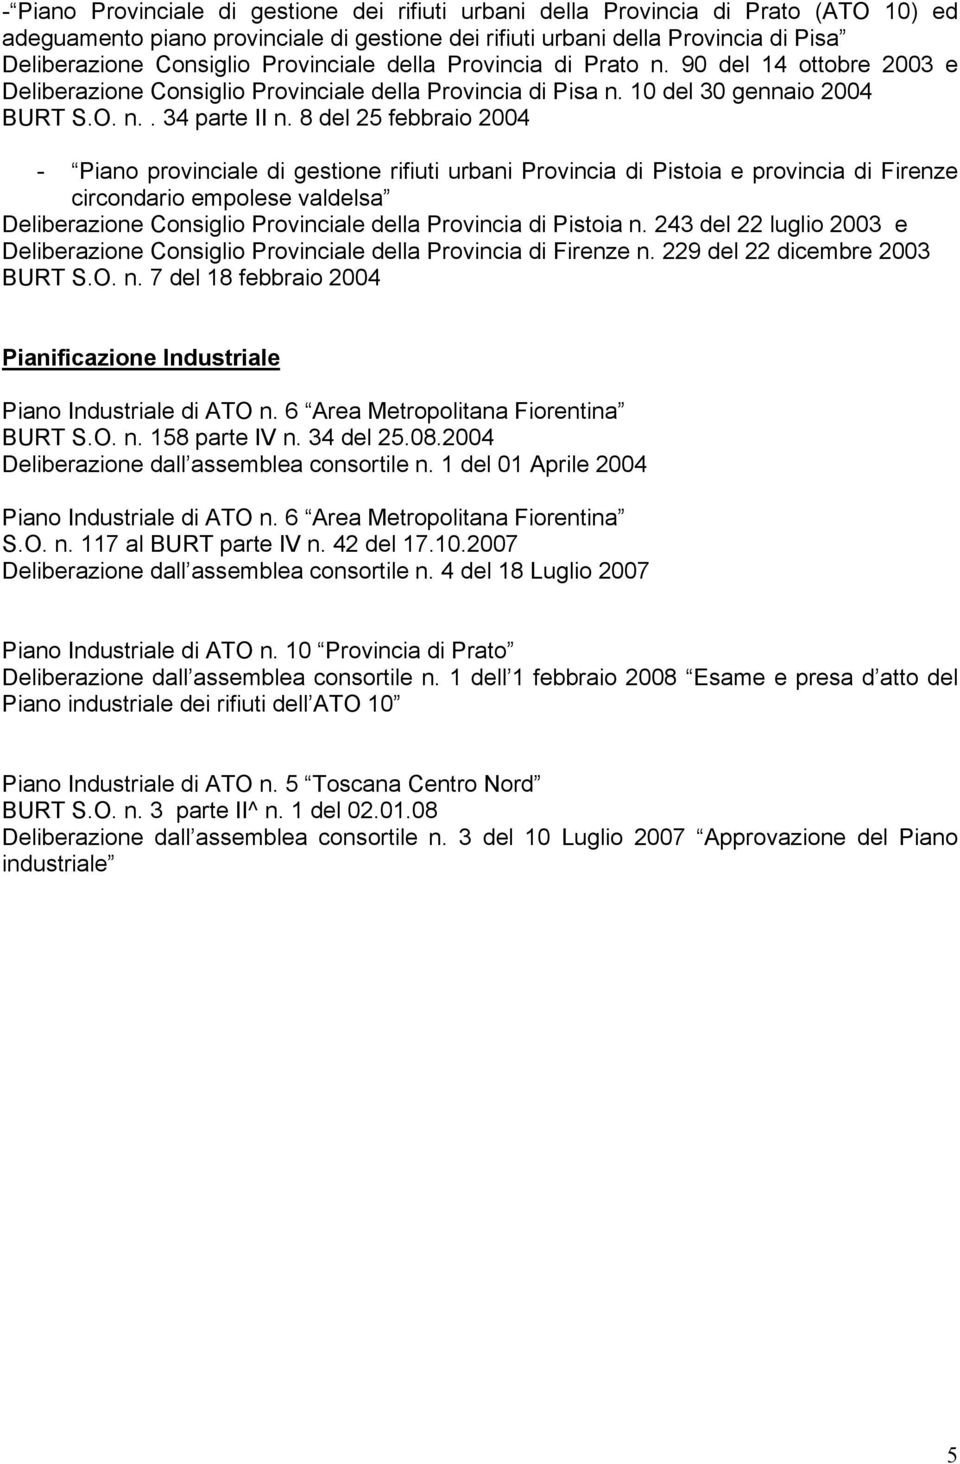 8 del 25 febbraio 2004 - Piano provinciale di gestione rifiuti urbani Provincia di Pistoia e provincia di Firenze circondario empolese valdelsa Deliberazione Consiglio Provinciale della Provincia di